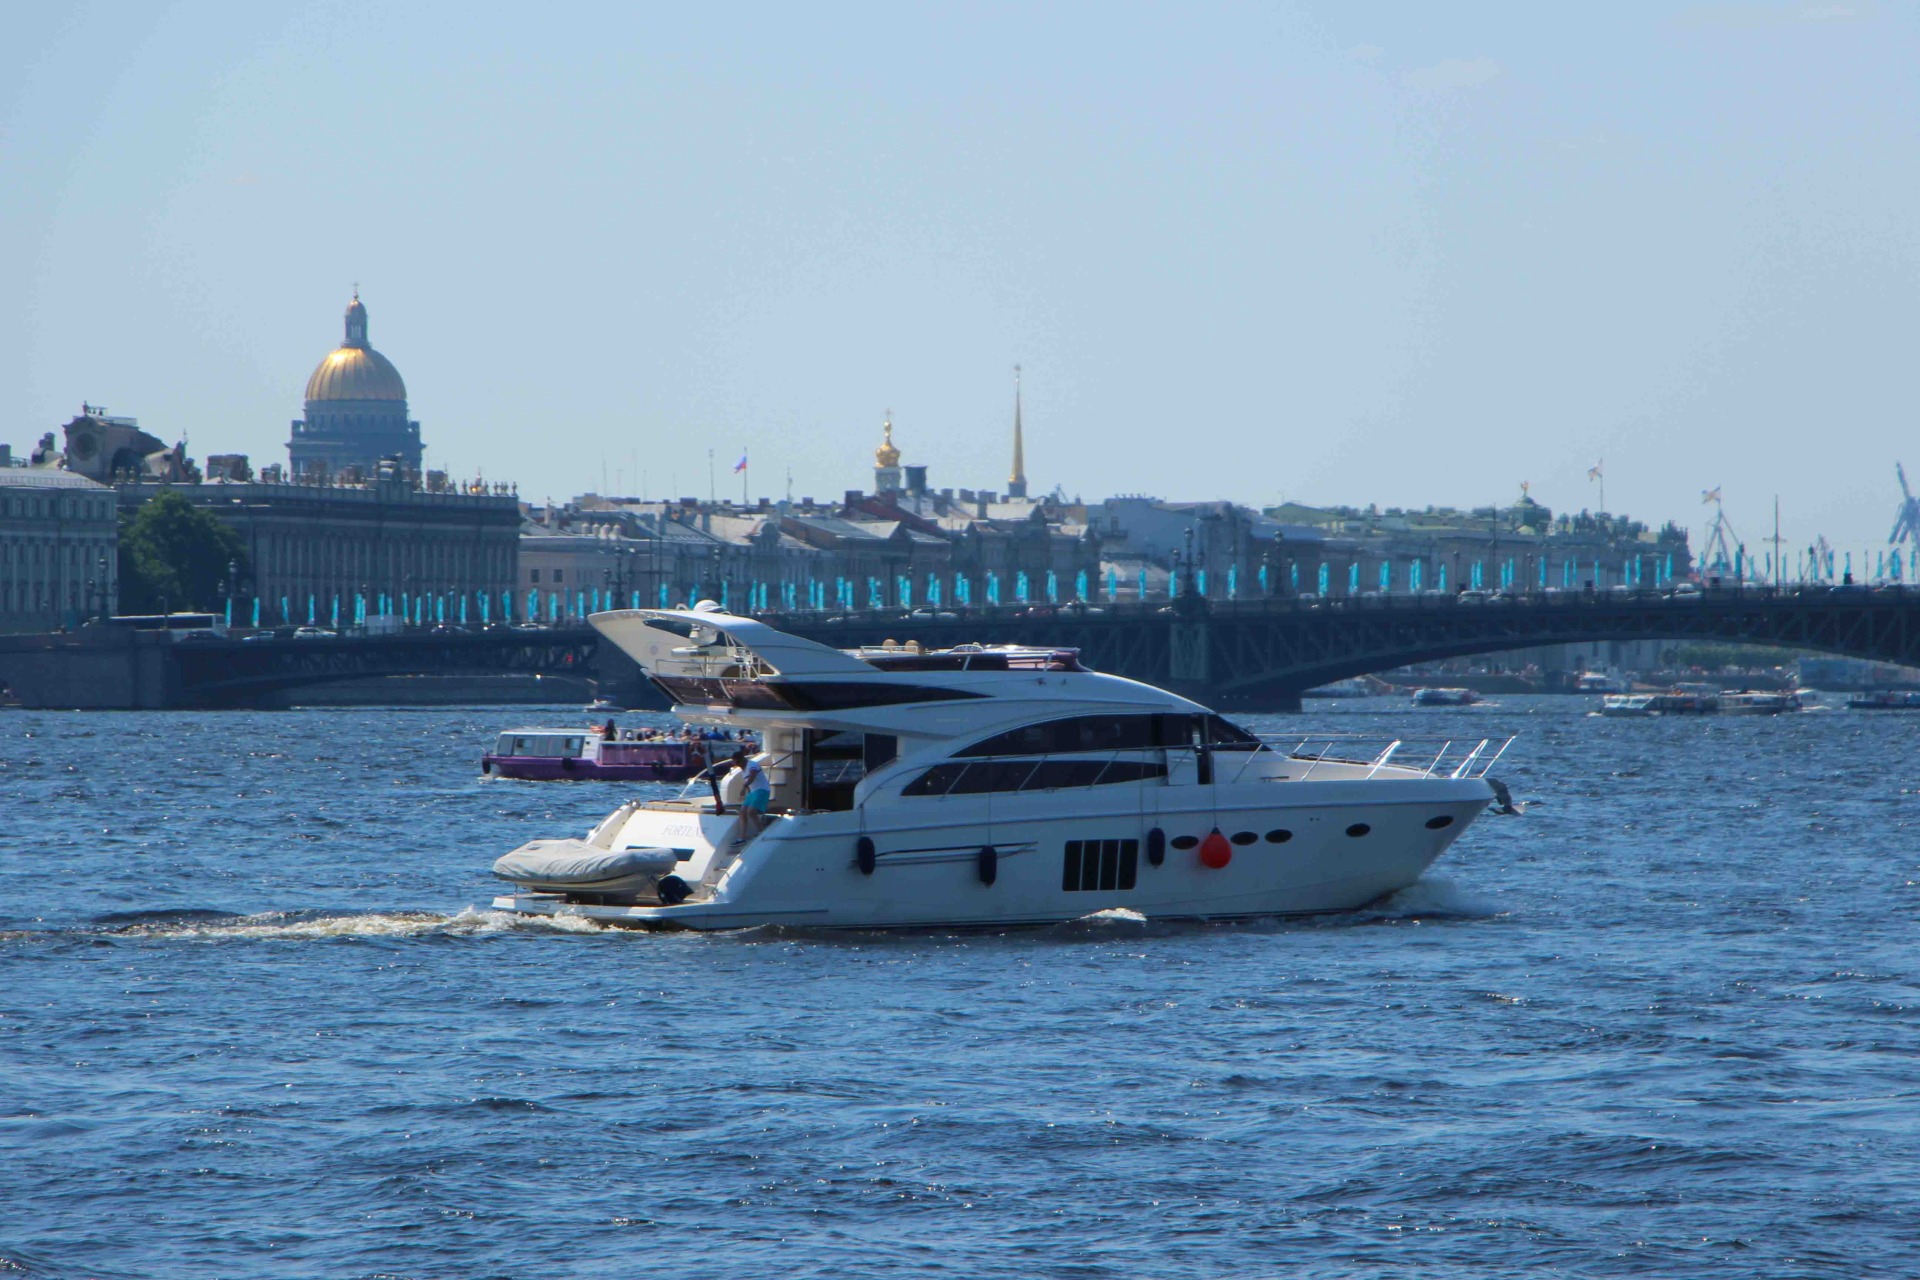 Лучшие варианты аренды яхты в Санкт-Петербурге в одном месте и по лучшей цене